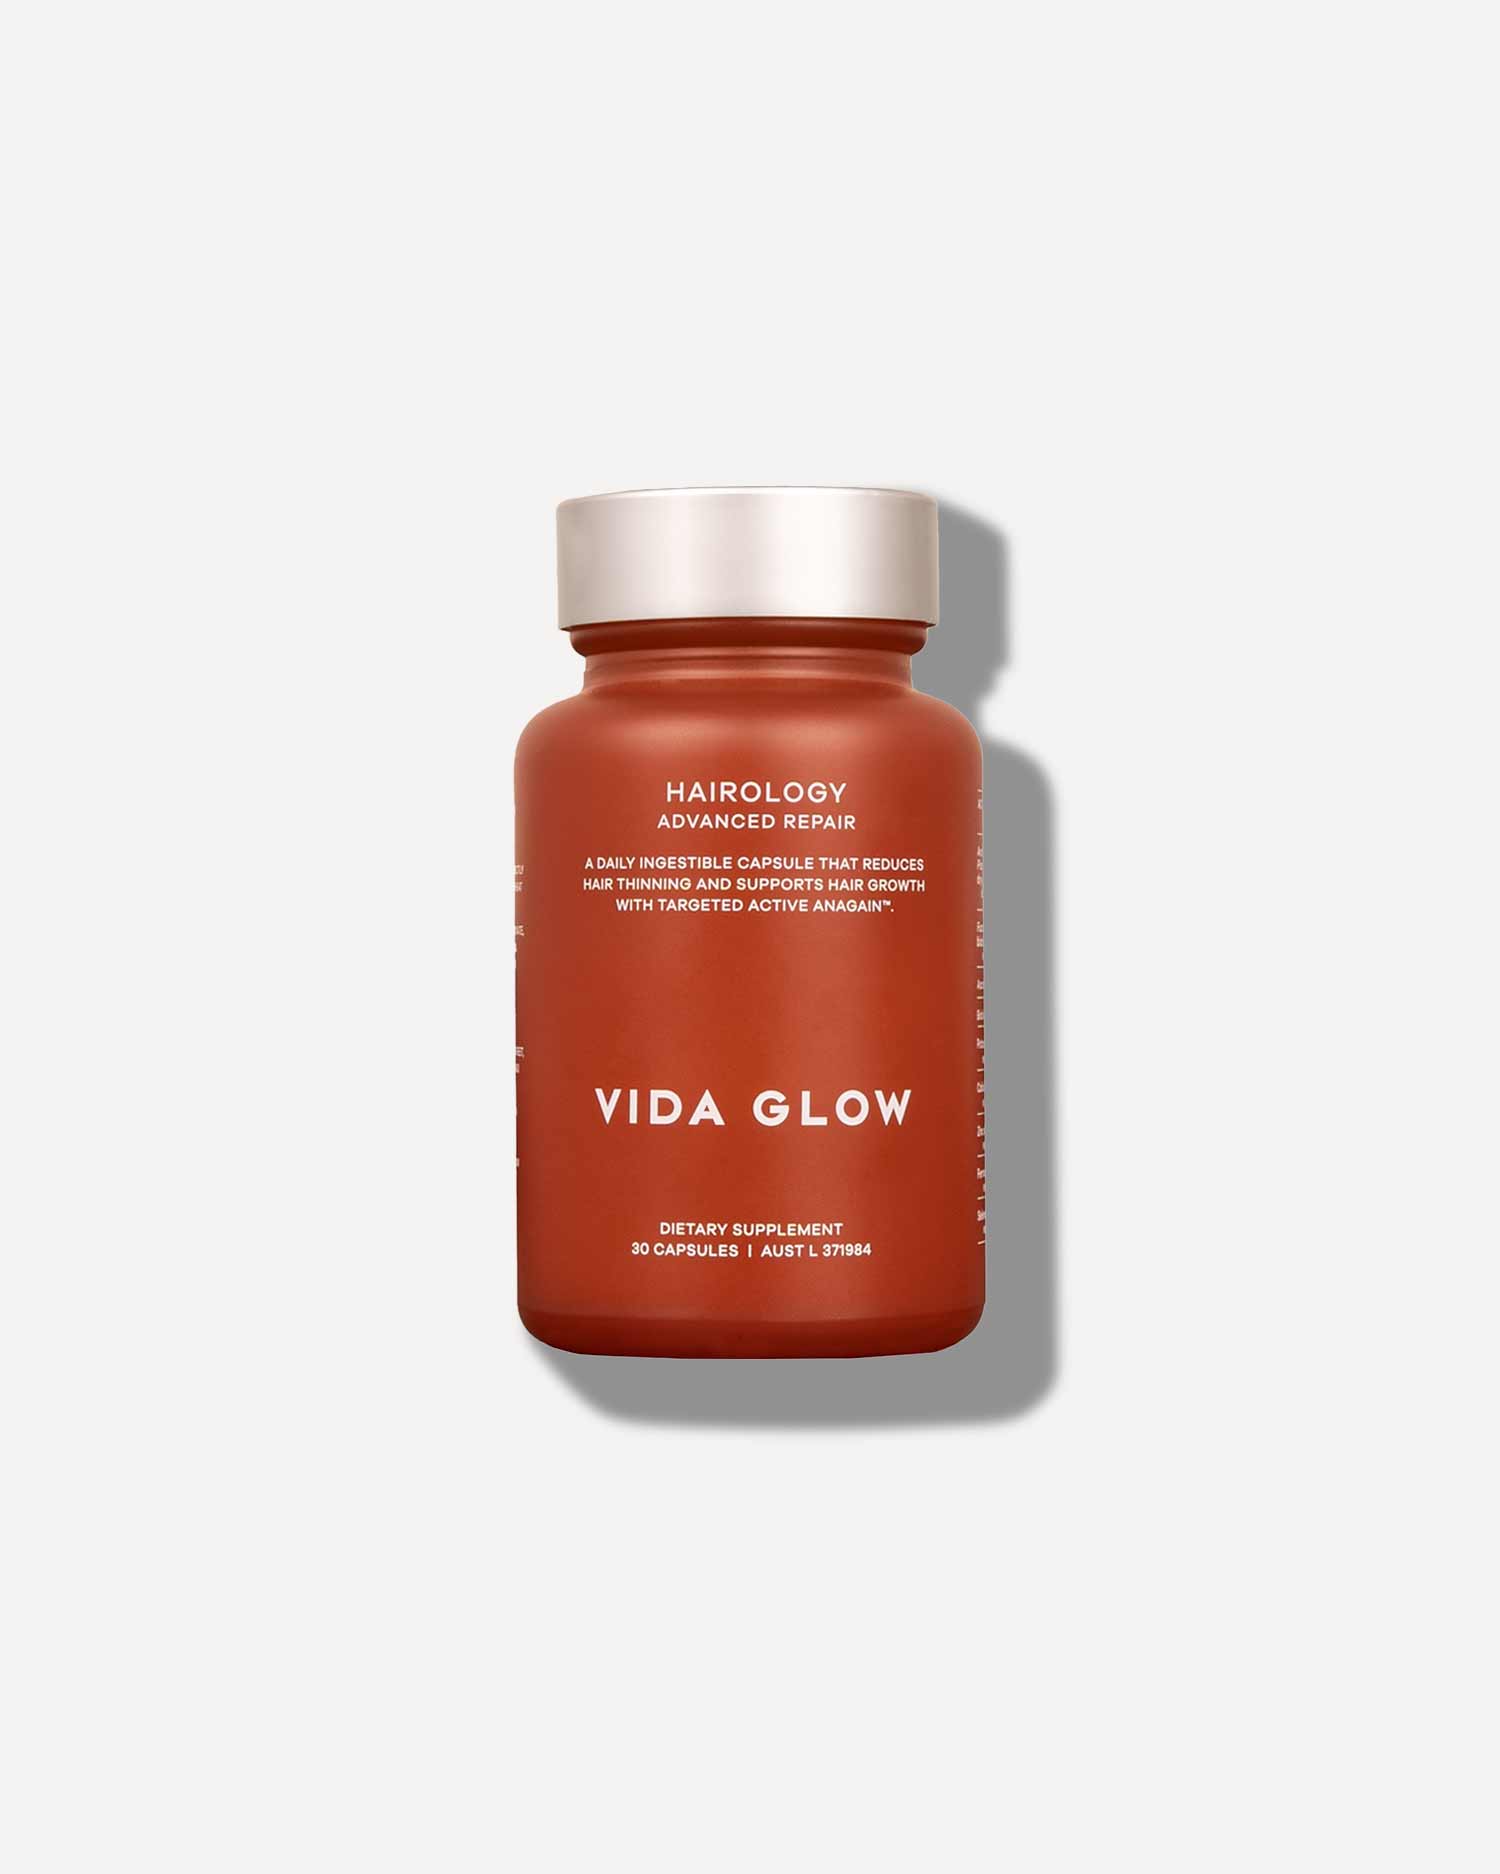 Vida Glow Advanced Repair Hairology™ 30 capsules